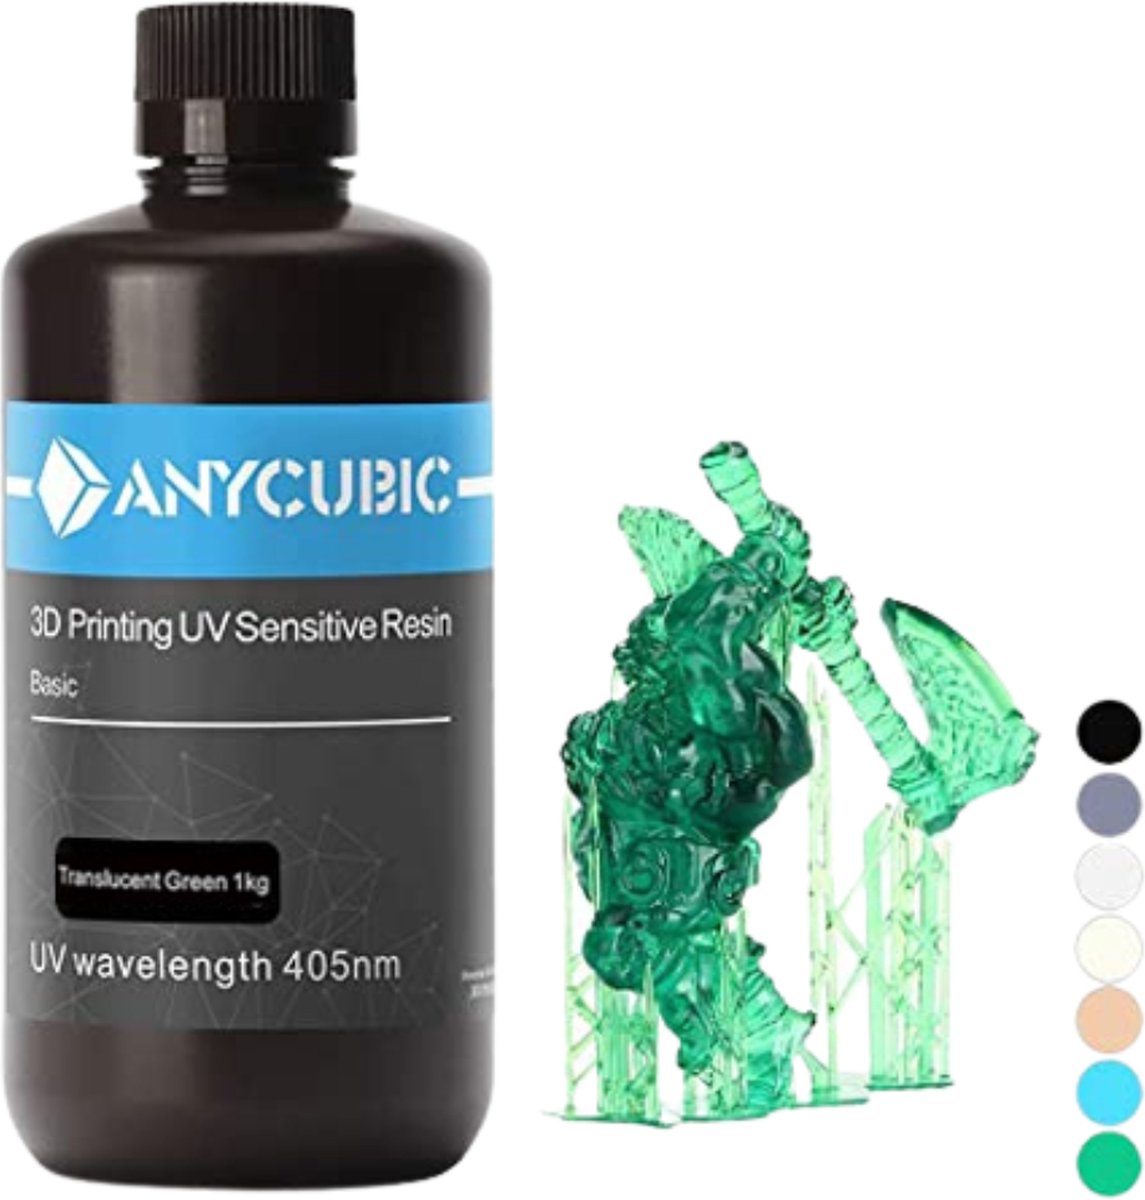 Anycubic SLA 3D Printer Resin - 1 Liter - 3D Printer Filament - 7 Verschillende Kleuren - Transparant Groen